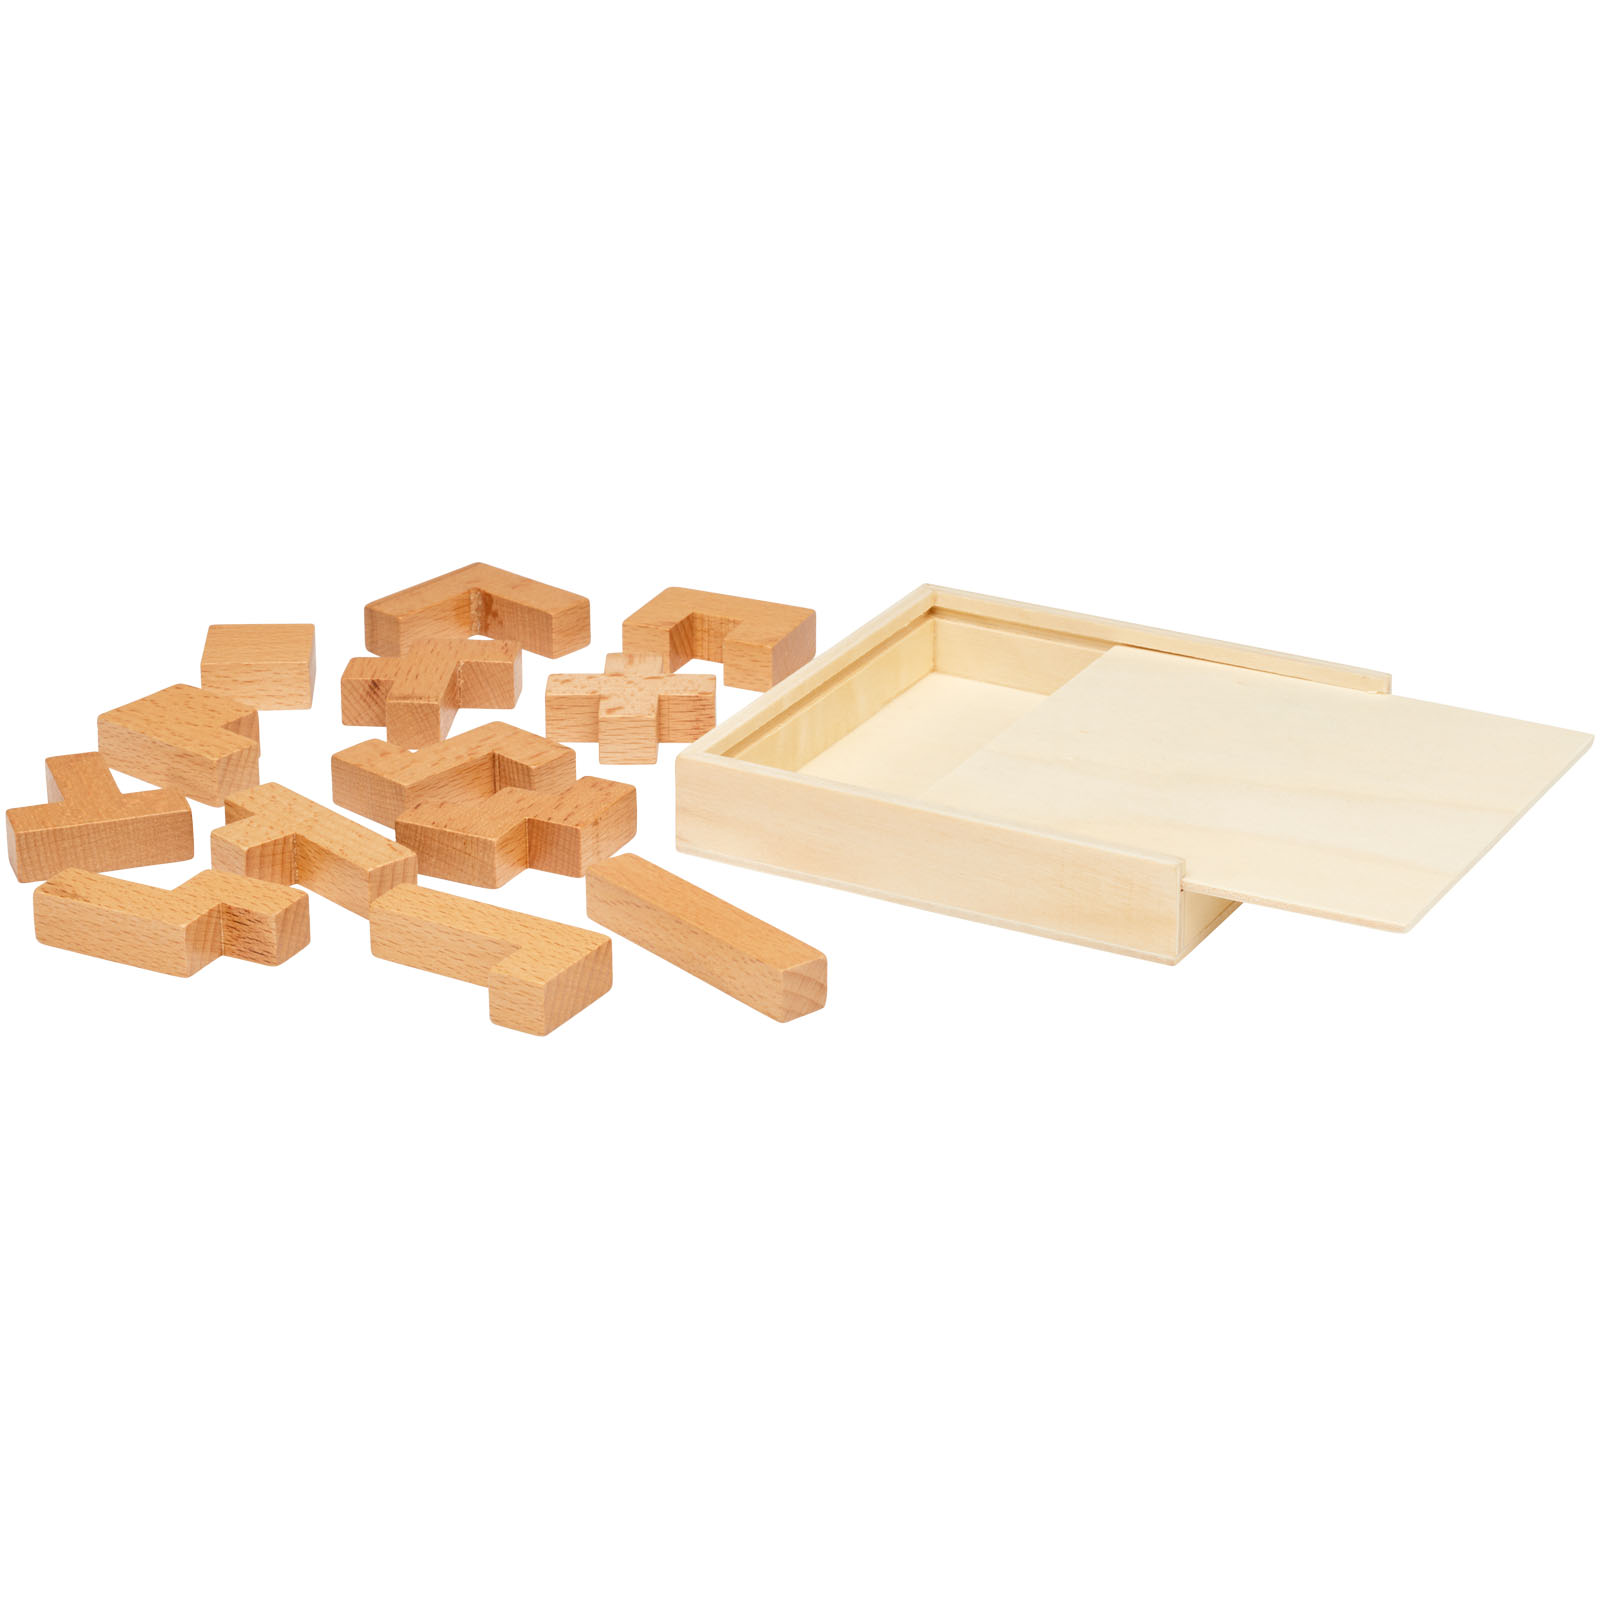 Indoor Games - Bark wooden puzzle